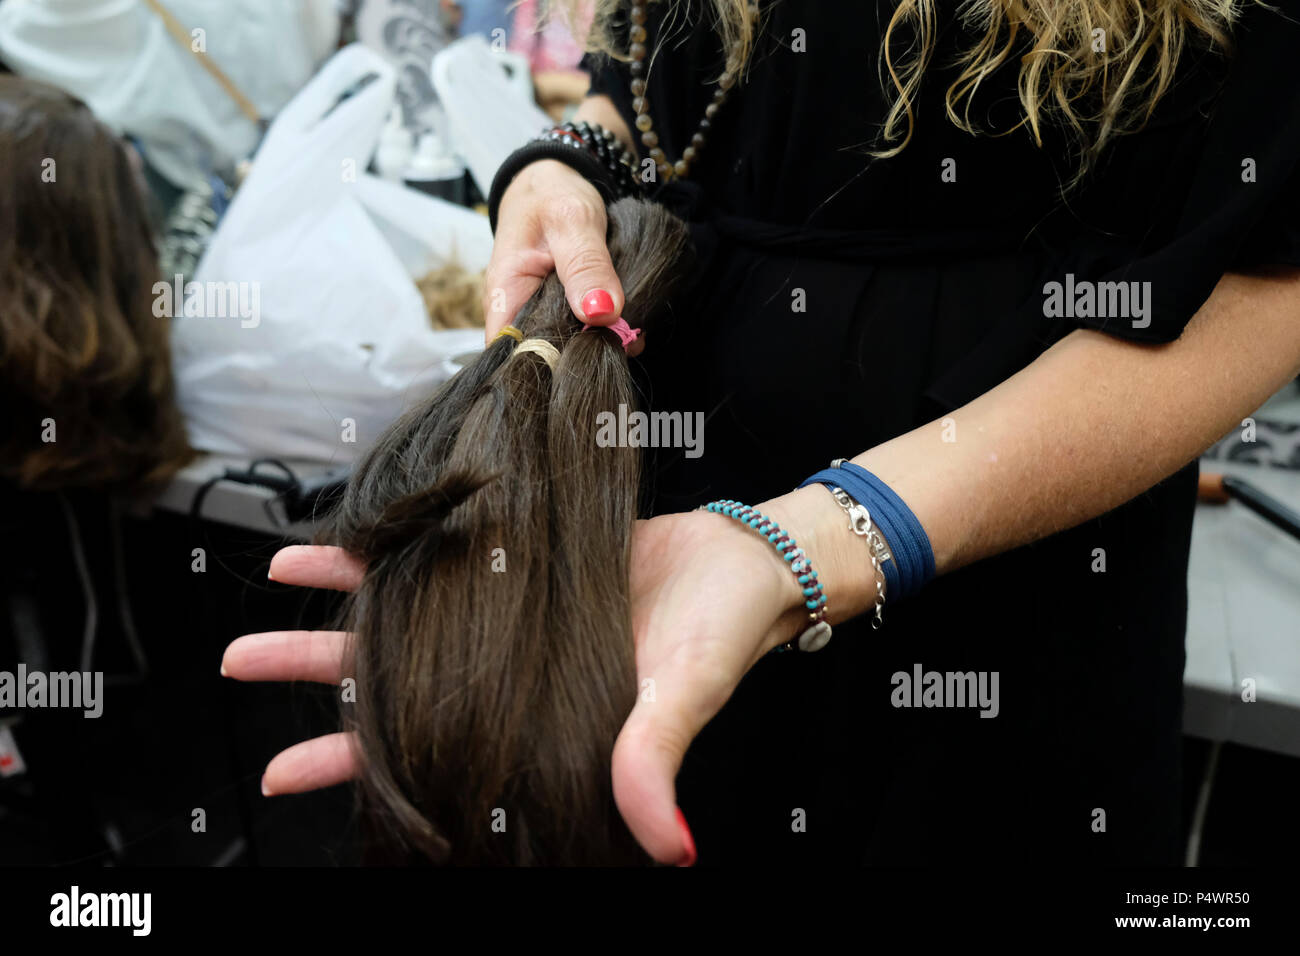 Bracha Keynan, produttore di parrucche e stilista di Haredi, mostra la collezione di parrucche per capelli umani nel suo negozio nella città di Bnei Brak o bene Beraq, un centro del giudaismo di Haredi in Israele Foto Stock